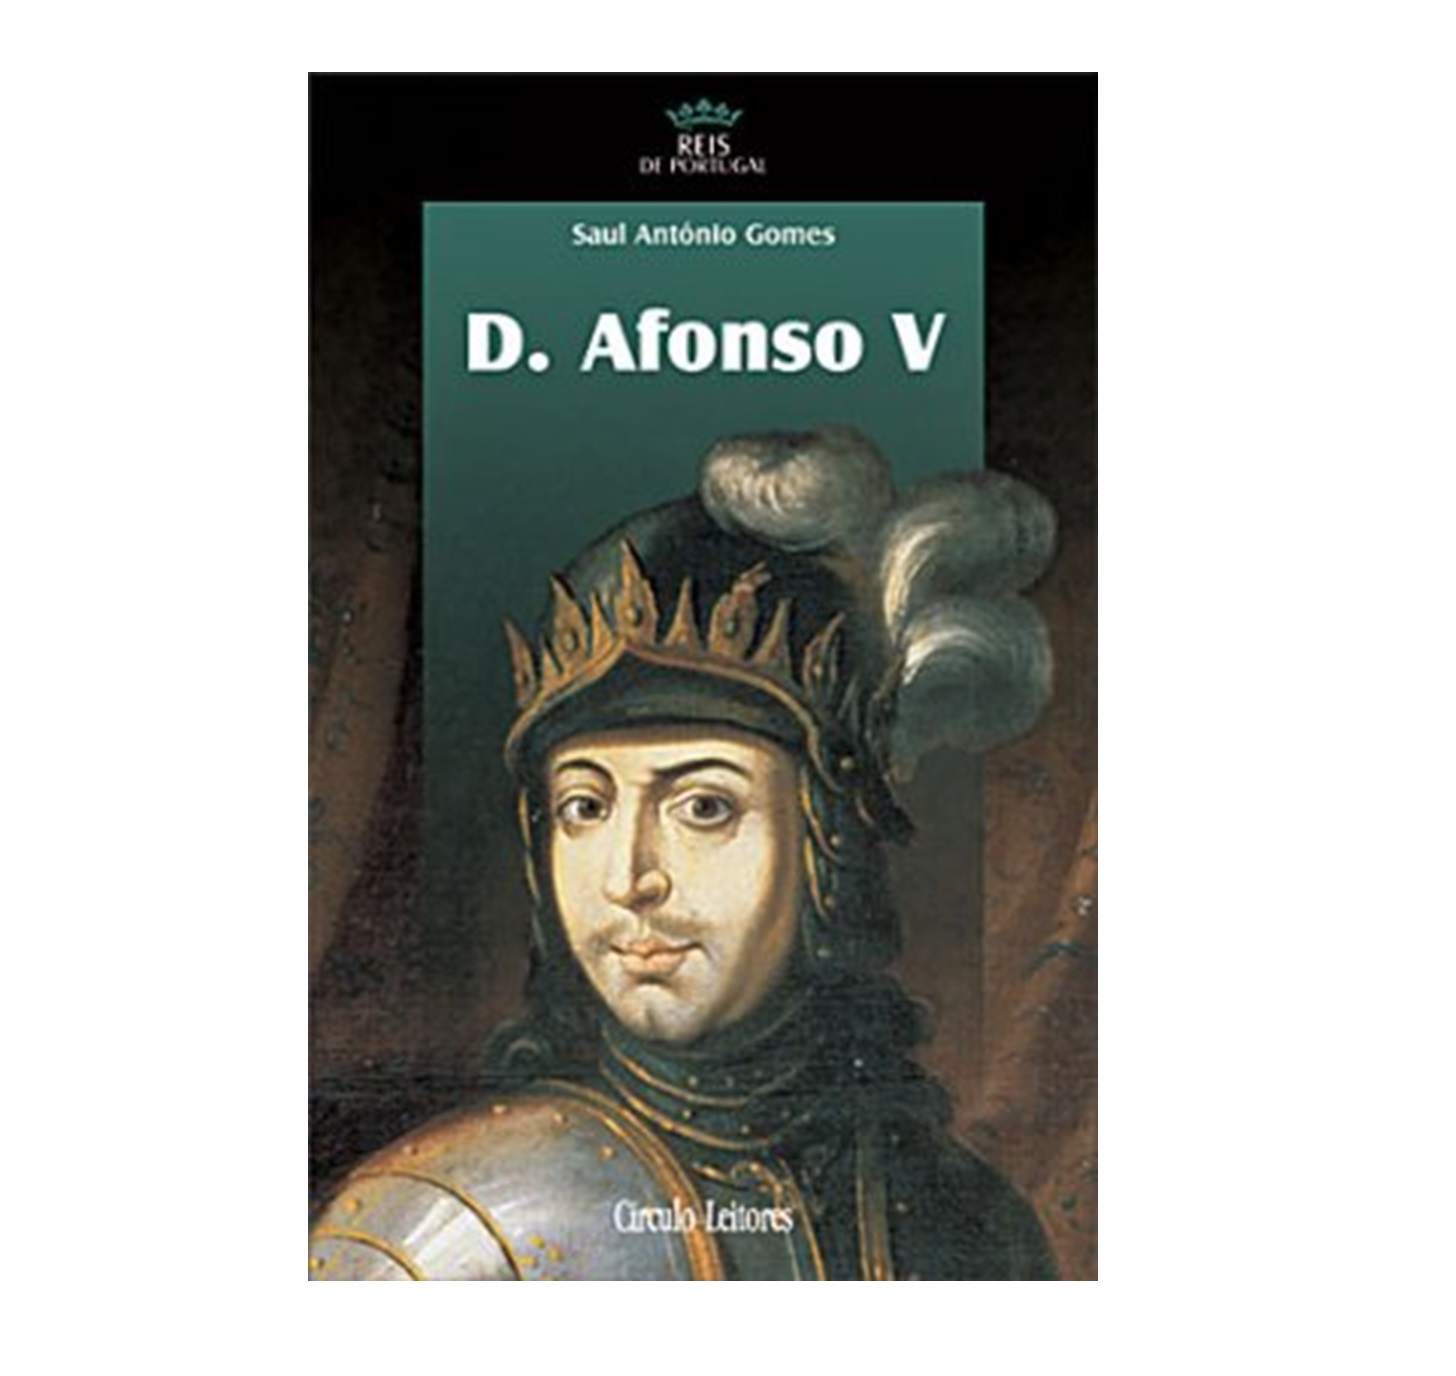 D. Afonso V